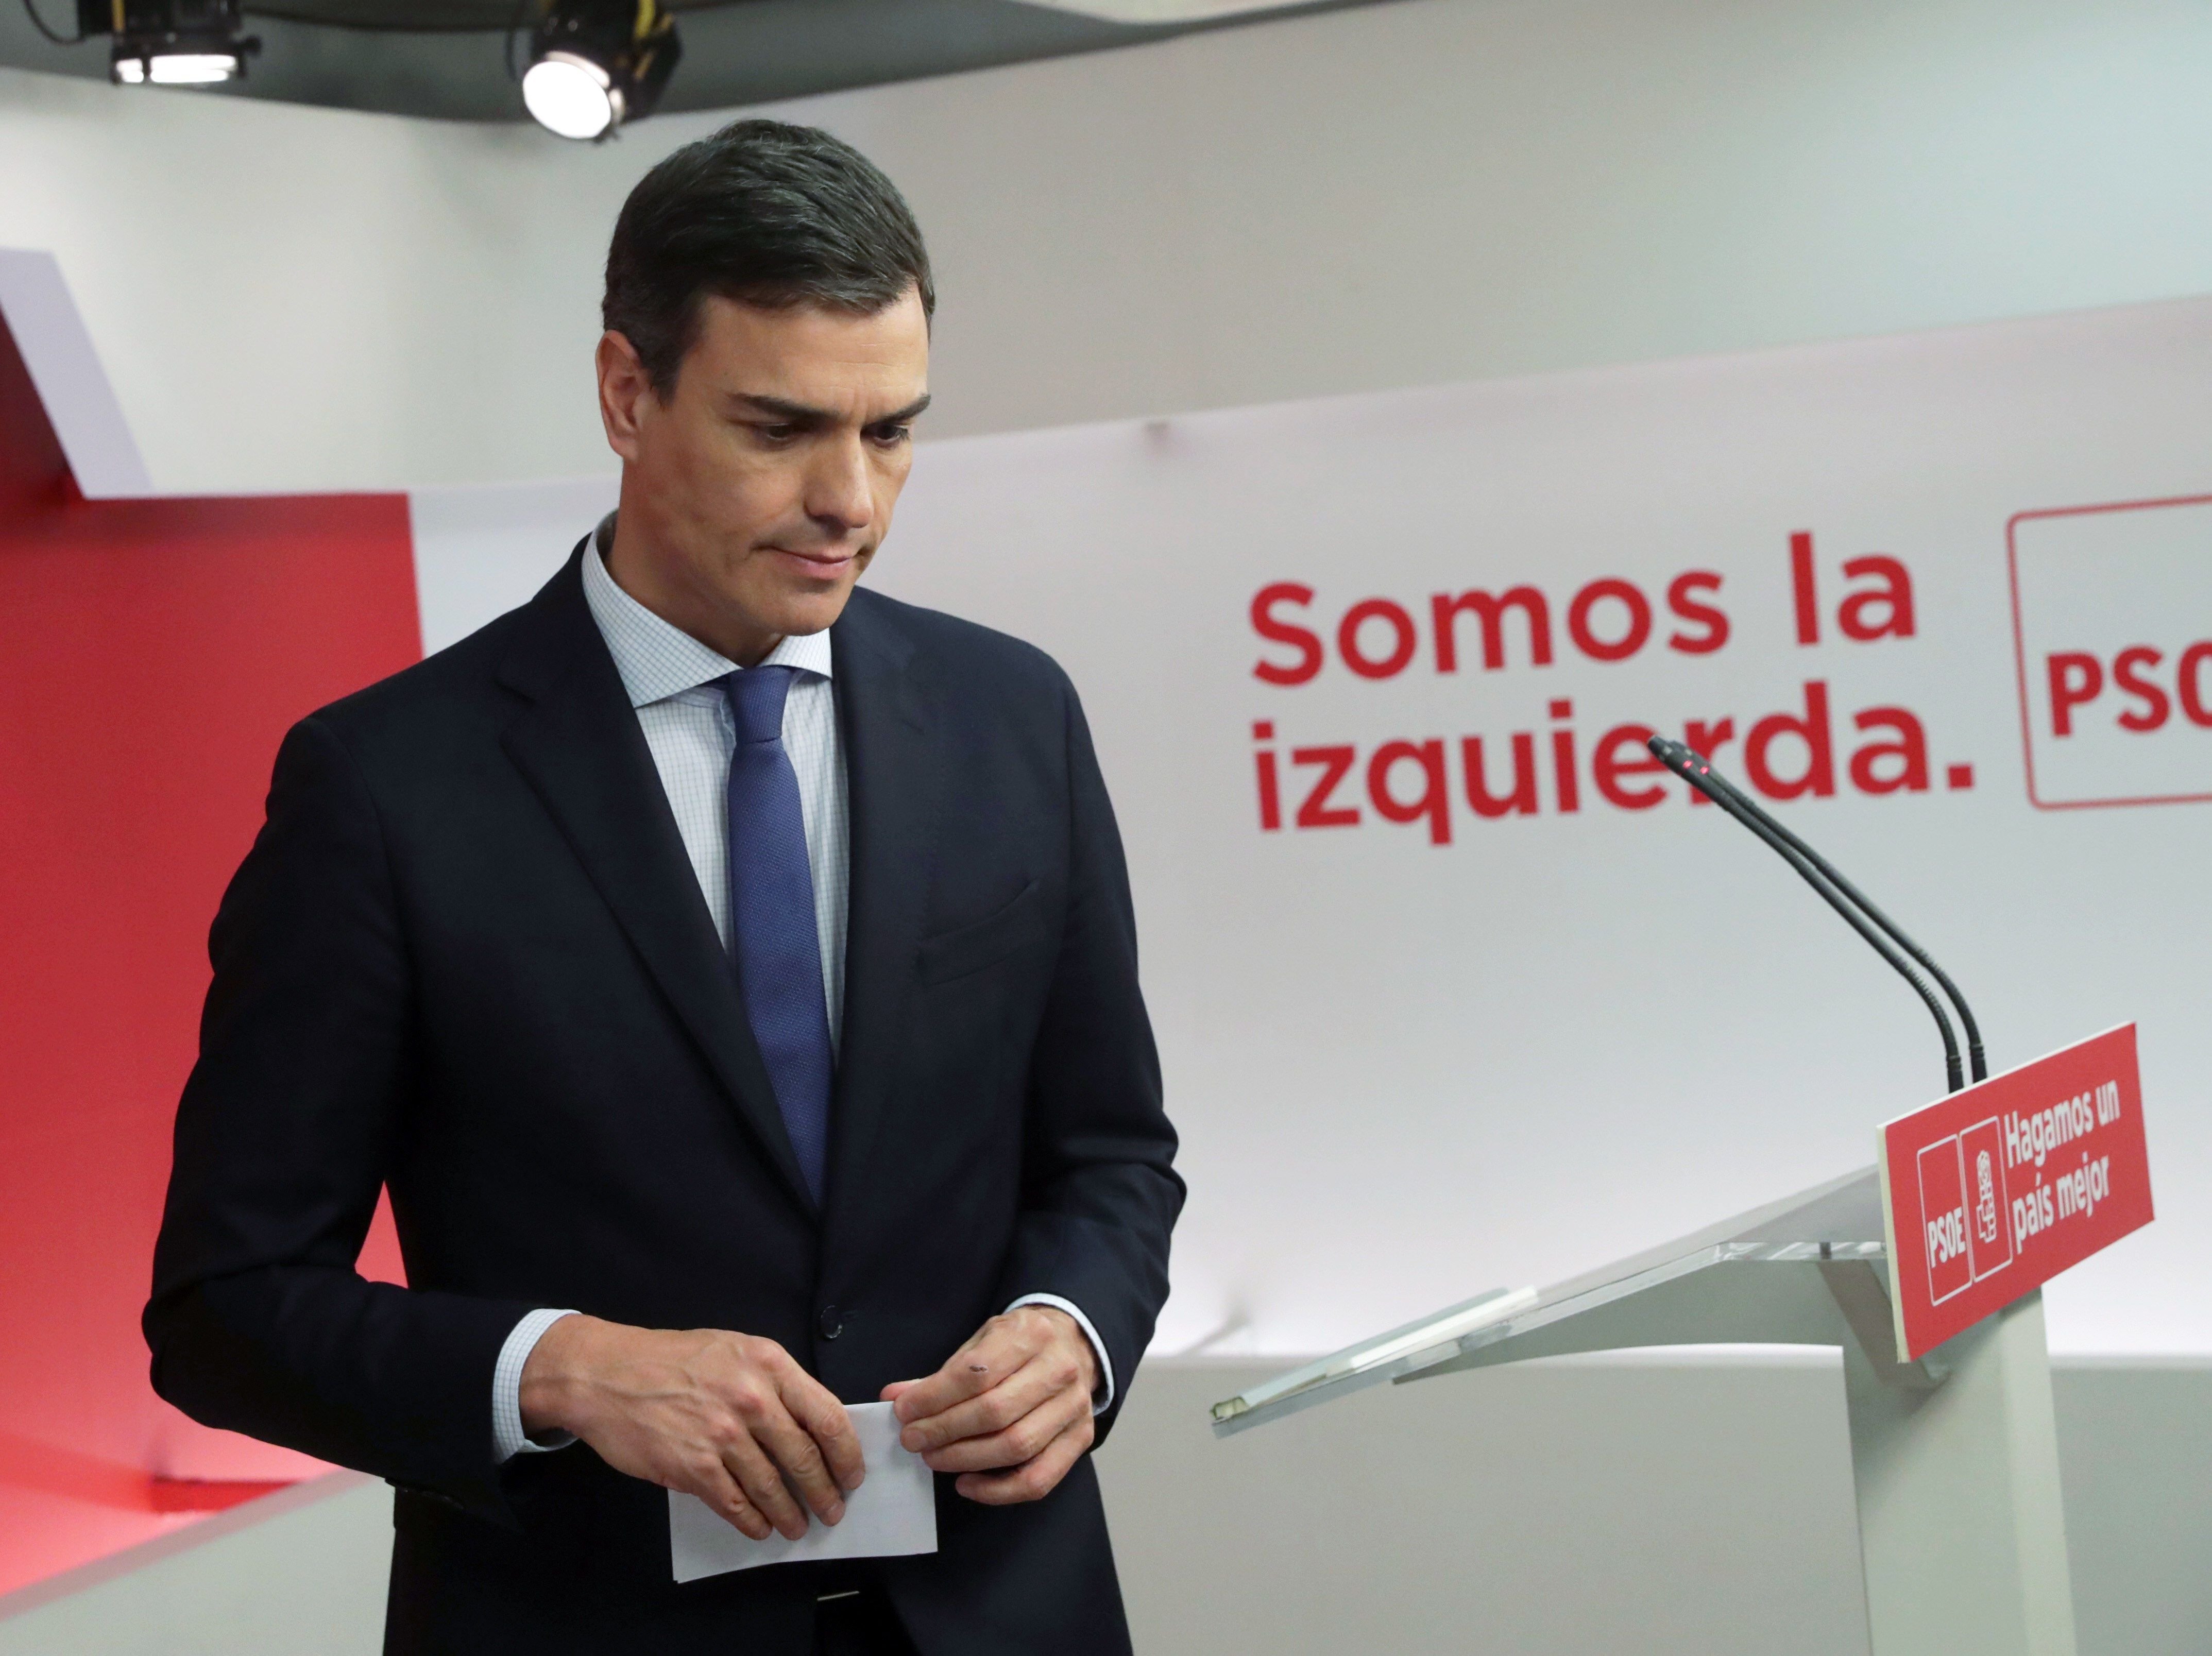 Sánchez convocarà eleccions si guanya la moció, però evita aclarir quan